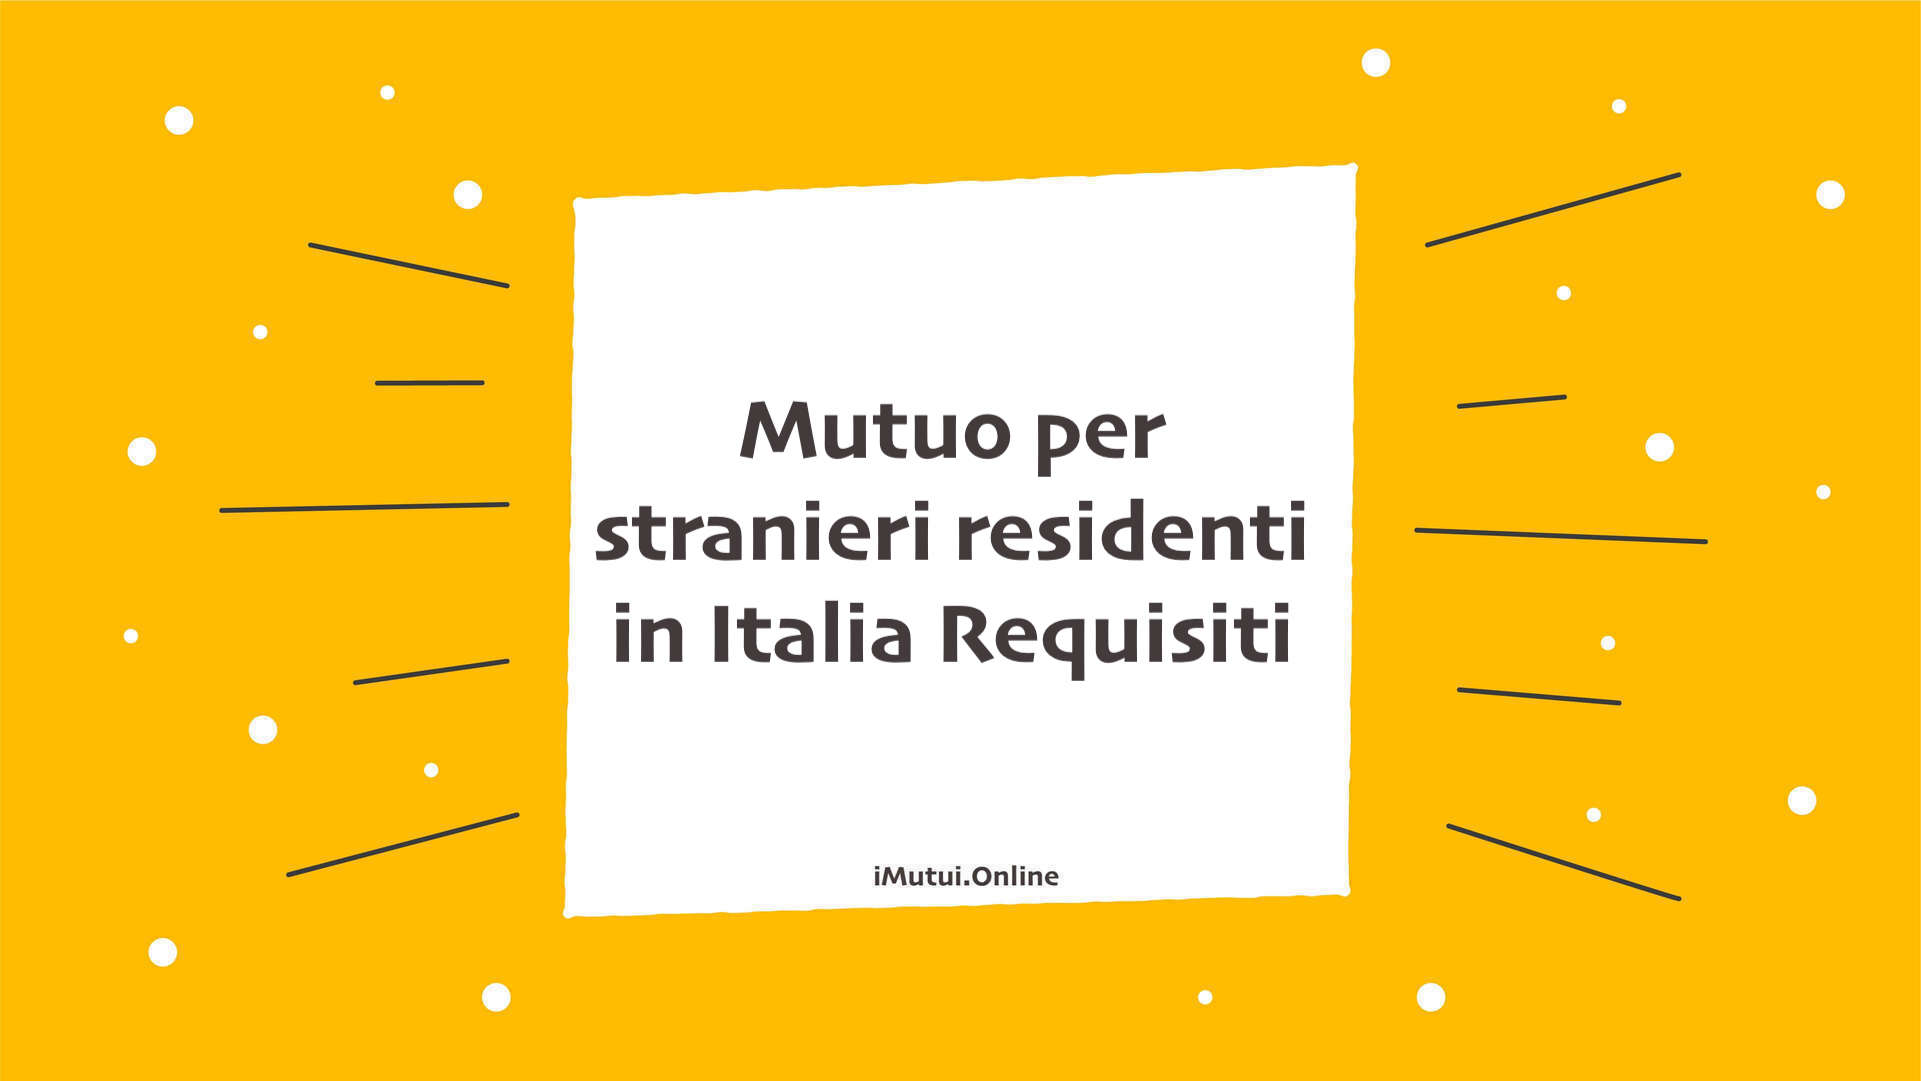 Mutuo per stranieri residenti in Italia Requisiti